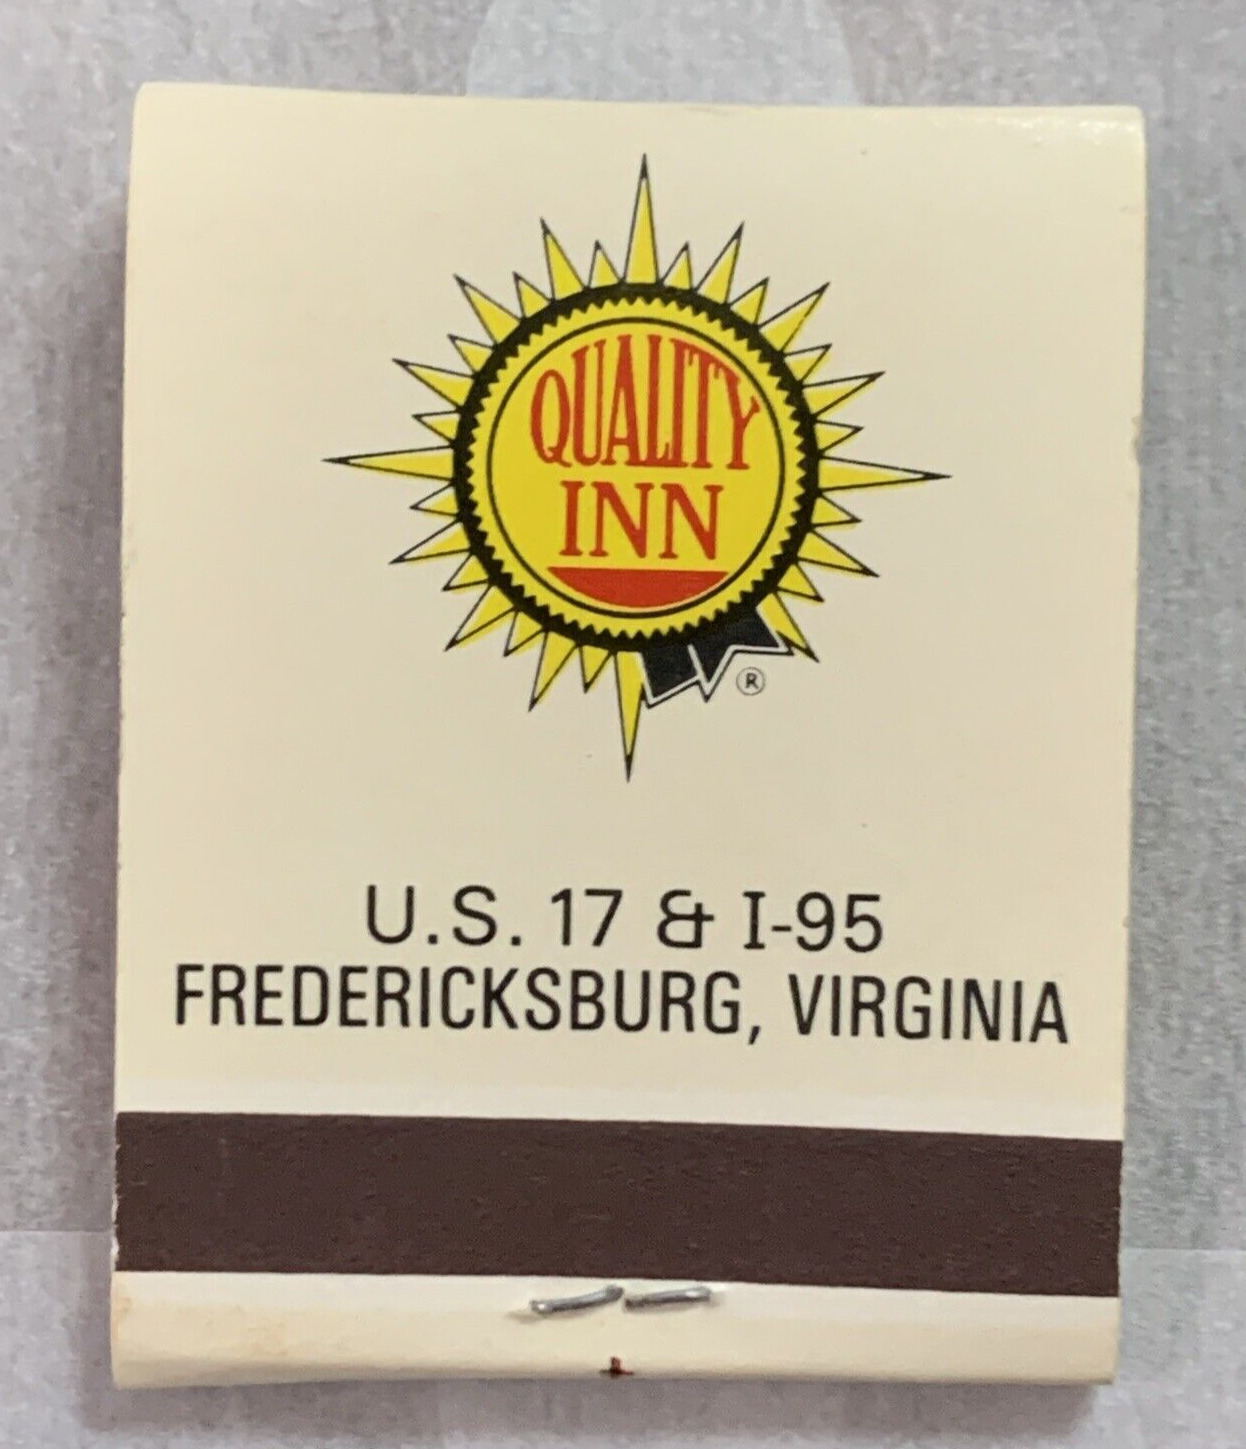 Matchbook Quality Inn Fredericksburg Virginia #0130